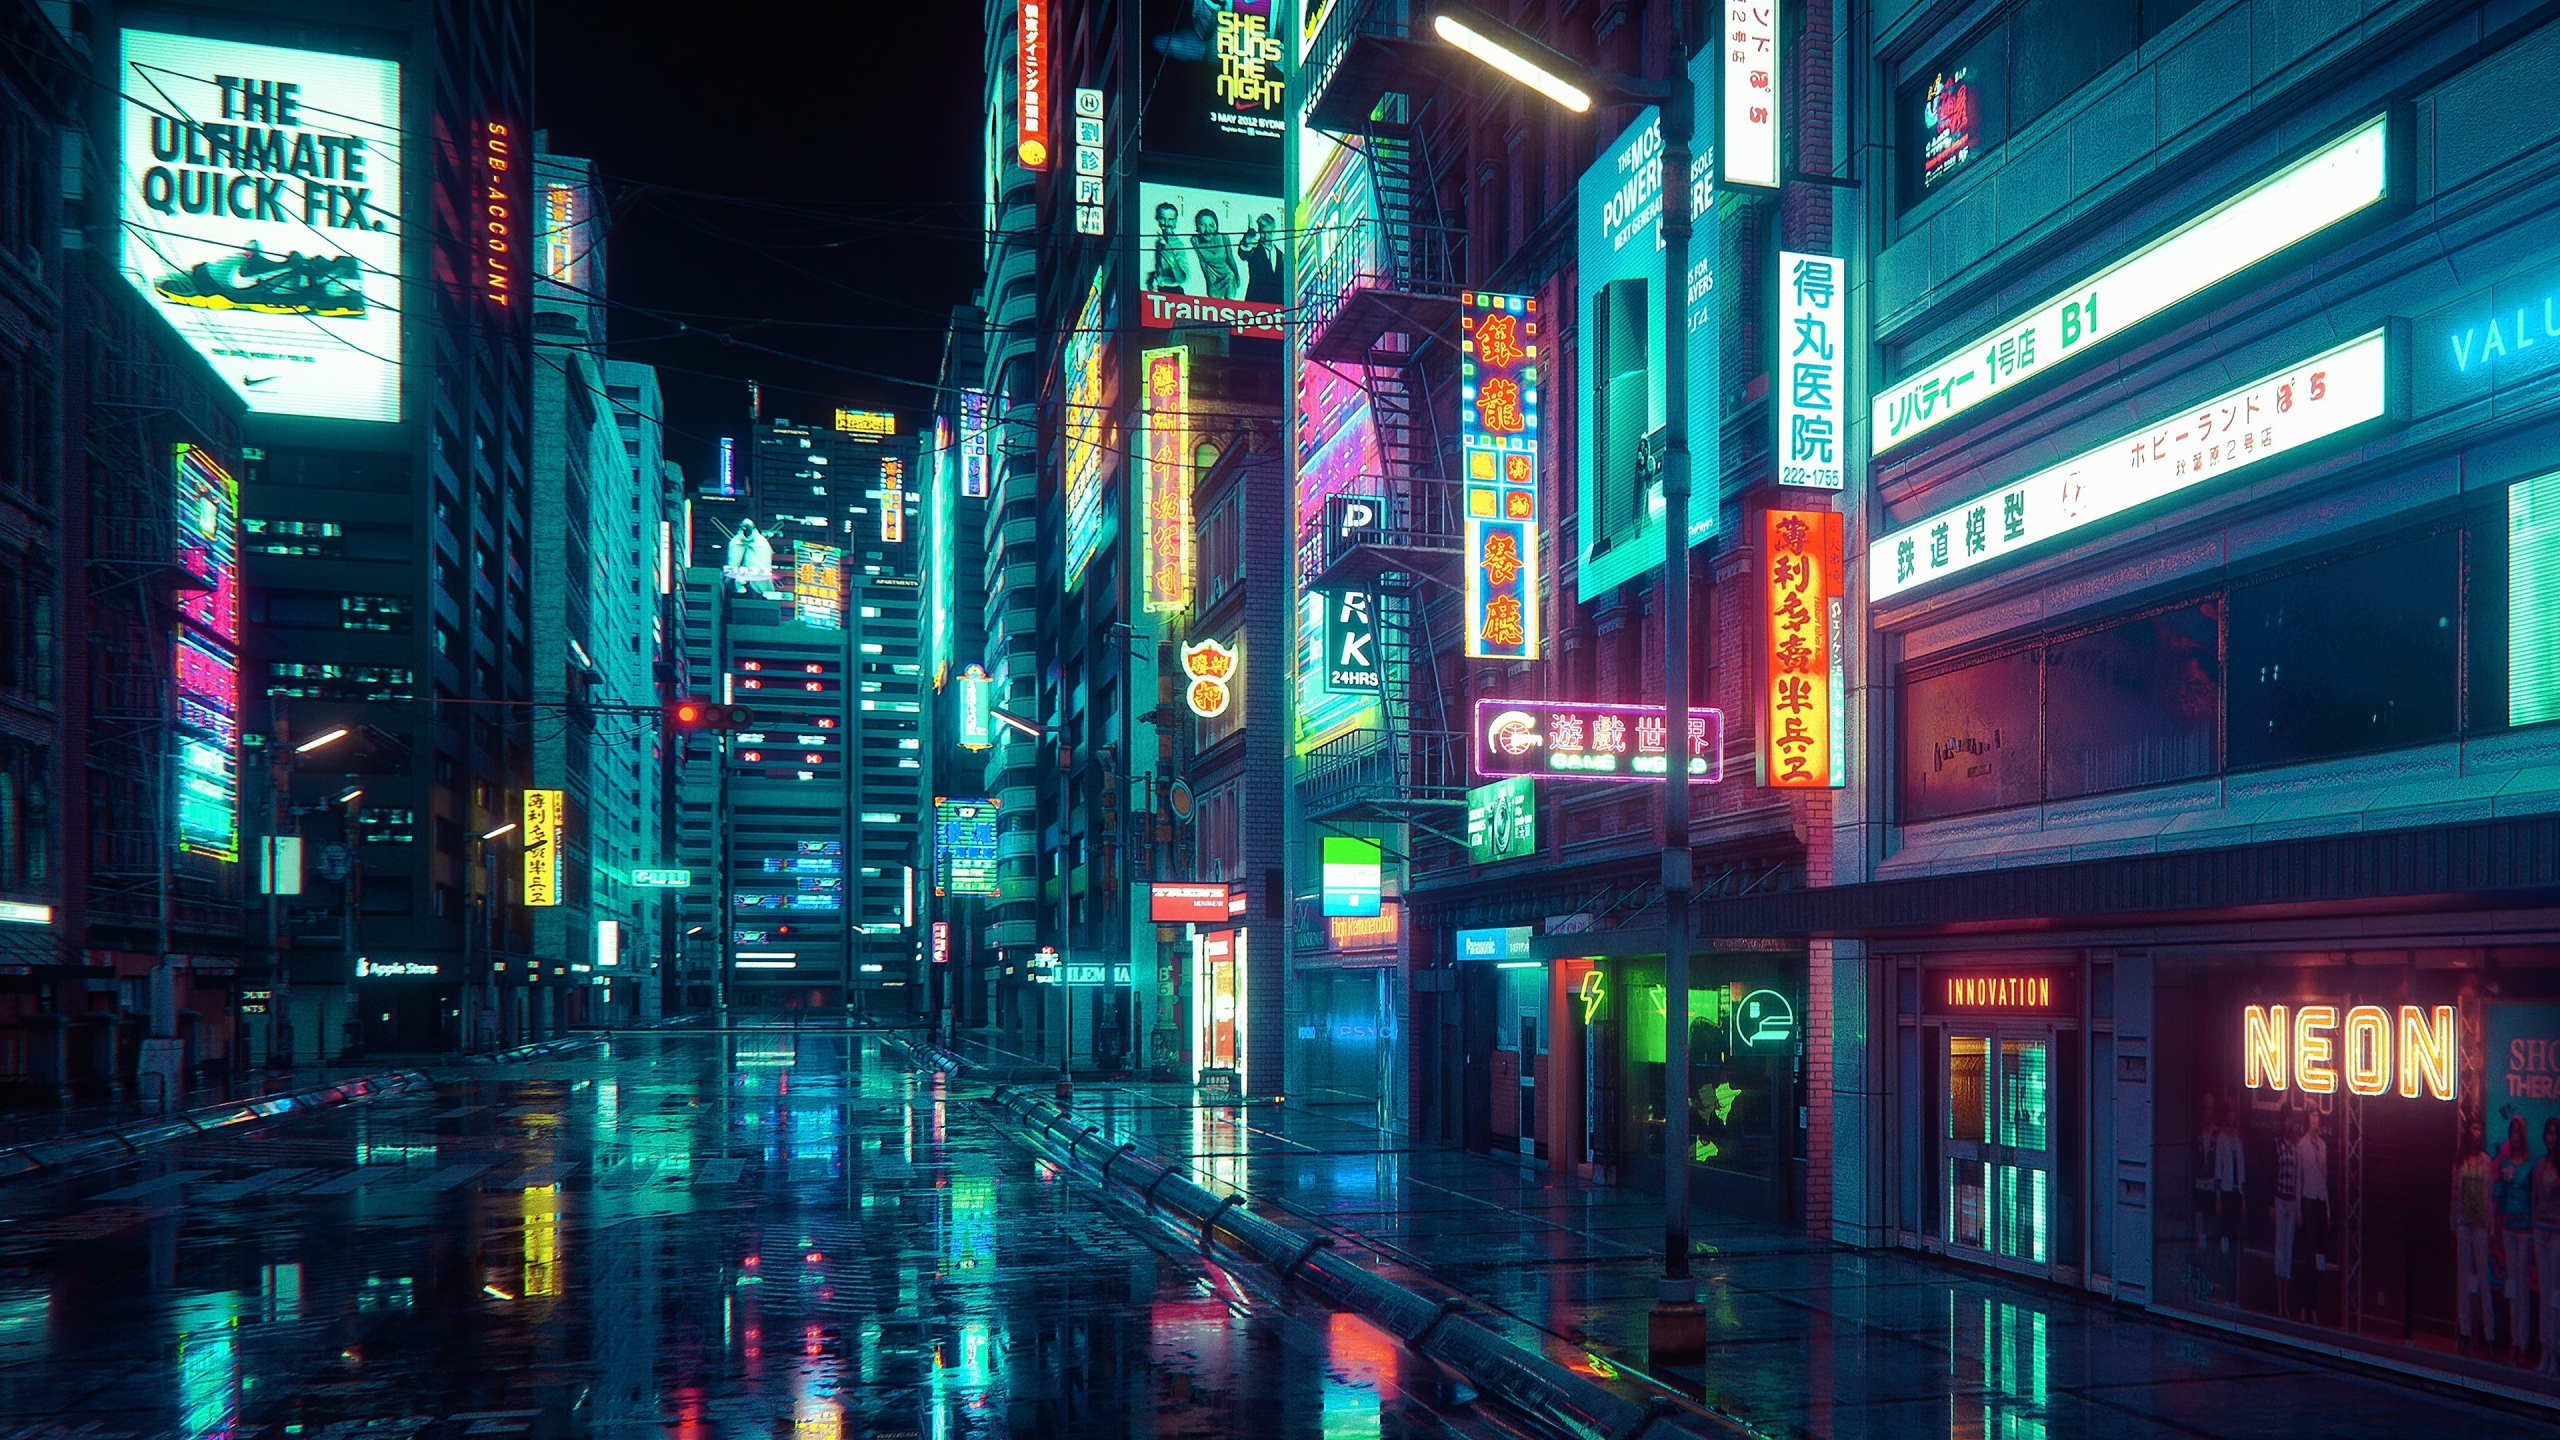 Download Ultrawide Cyberpunk Night City Buildings Wallpaper